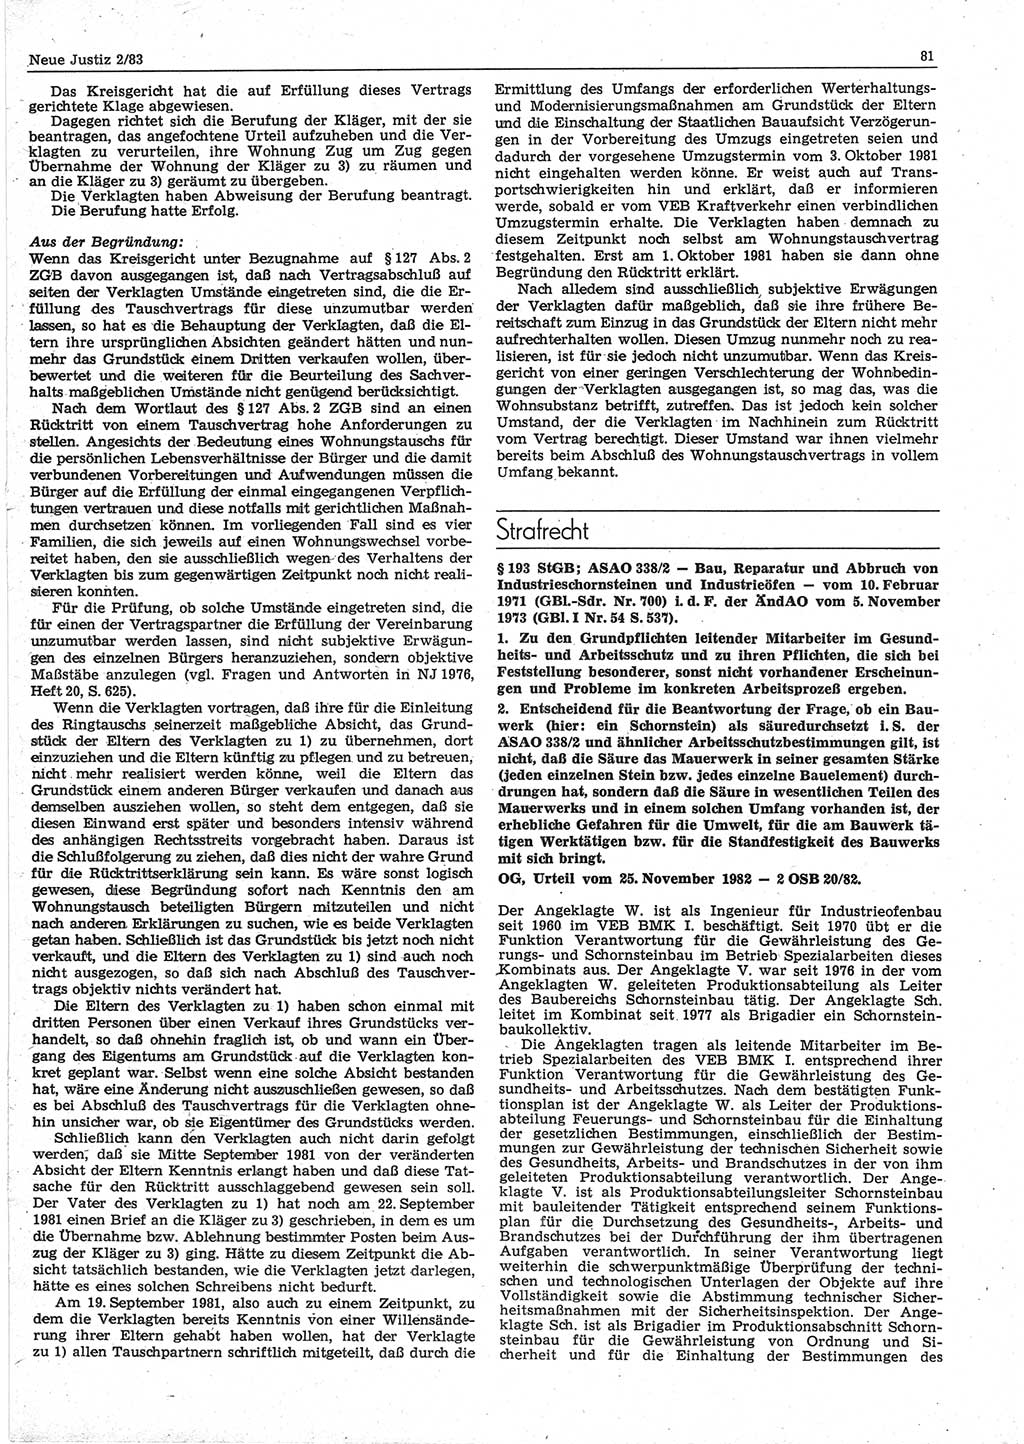 Neue Justiz (NJ), Zeitschrift für sozialistisches Recht und Gesetzlichkeit [Deutsche Demokratische Republik (DDR)], 37. Jahrgang 1983, Seite 81 (NJ DDR 1983, S. 81)